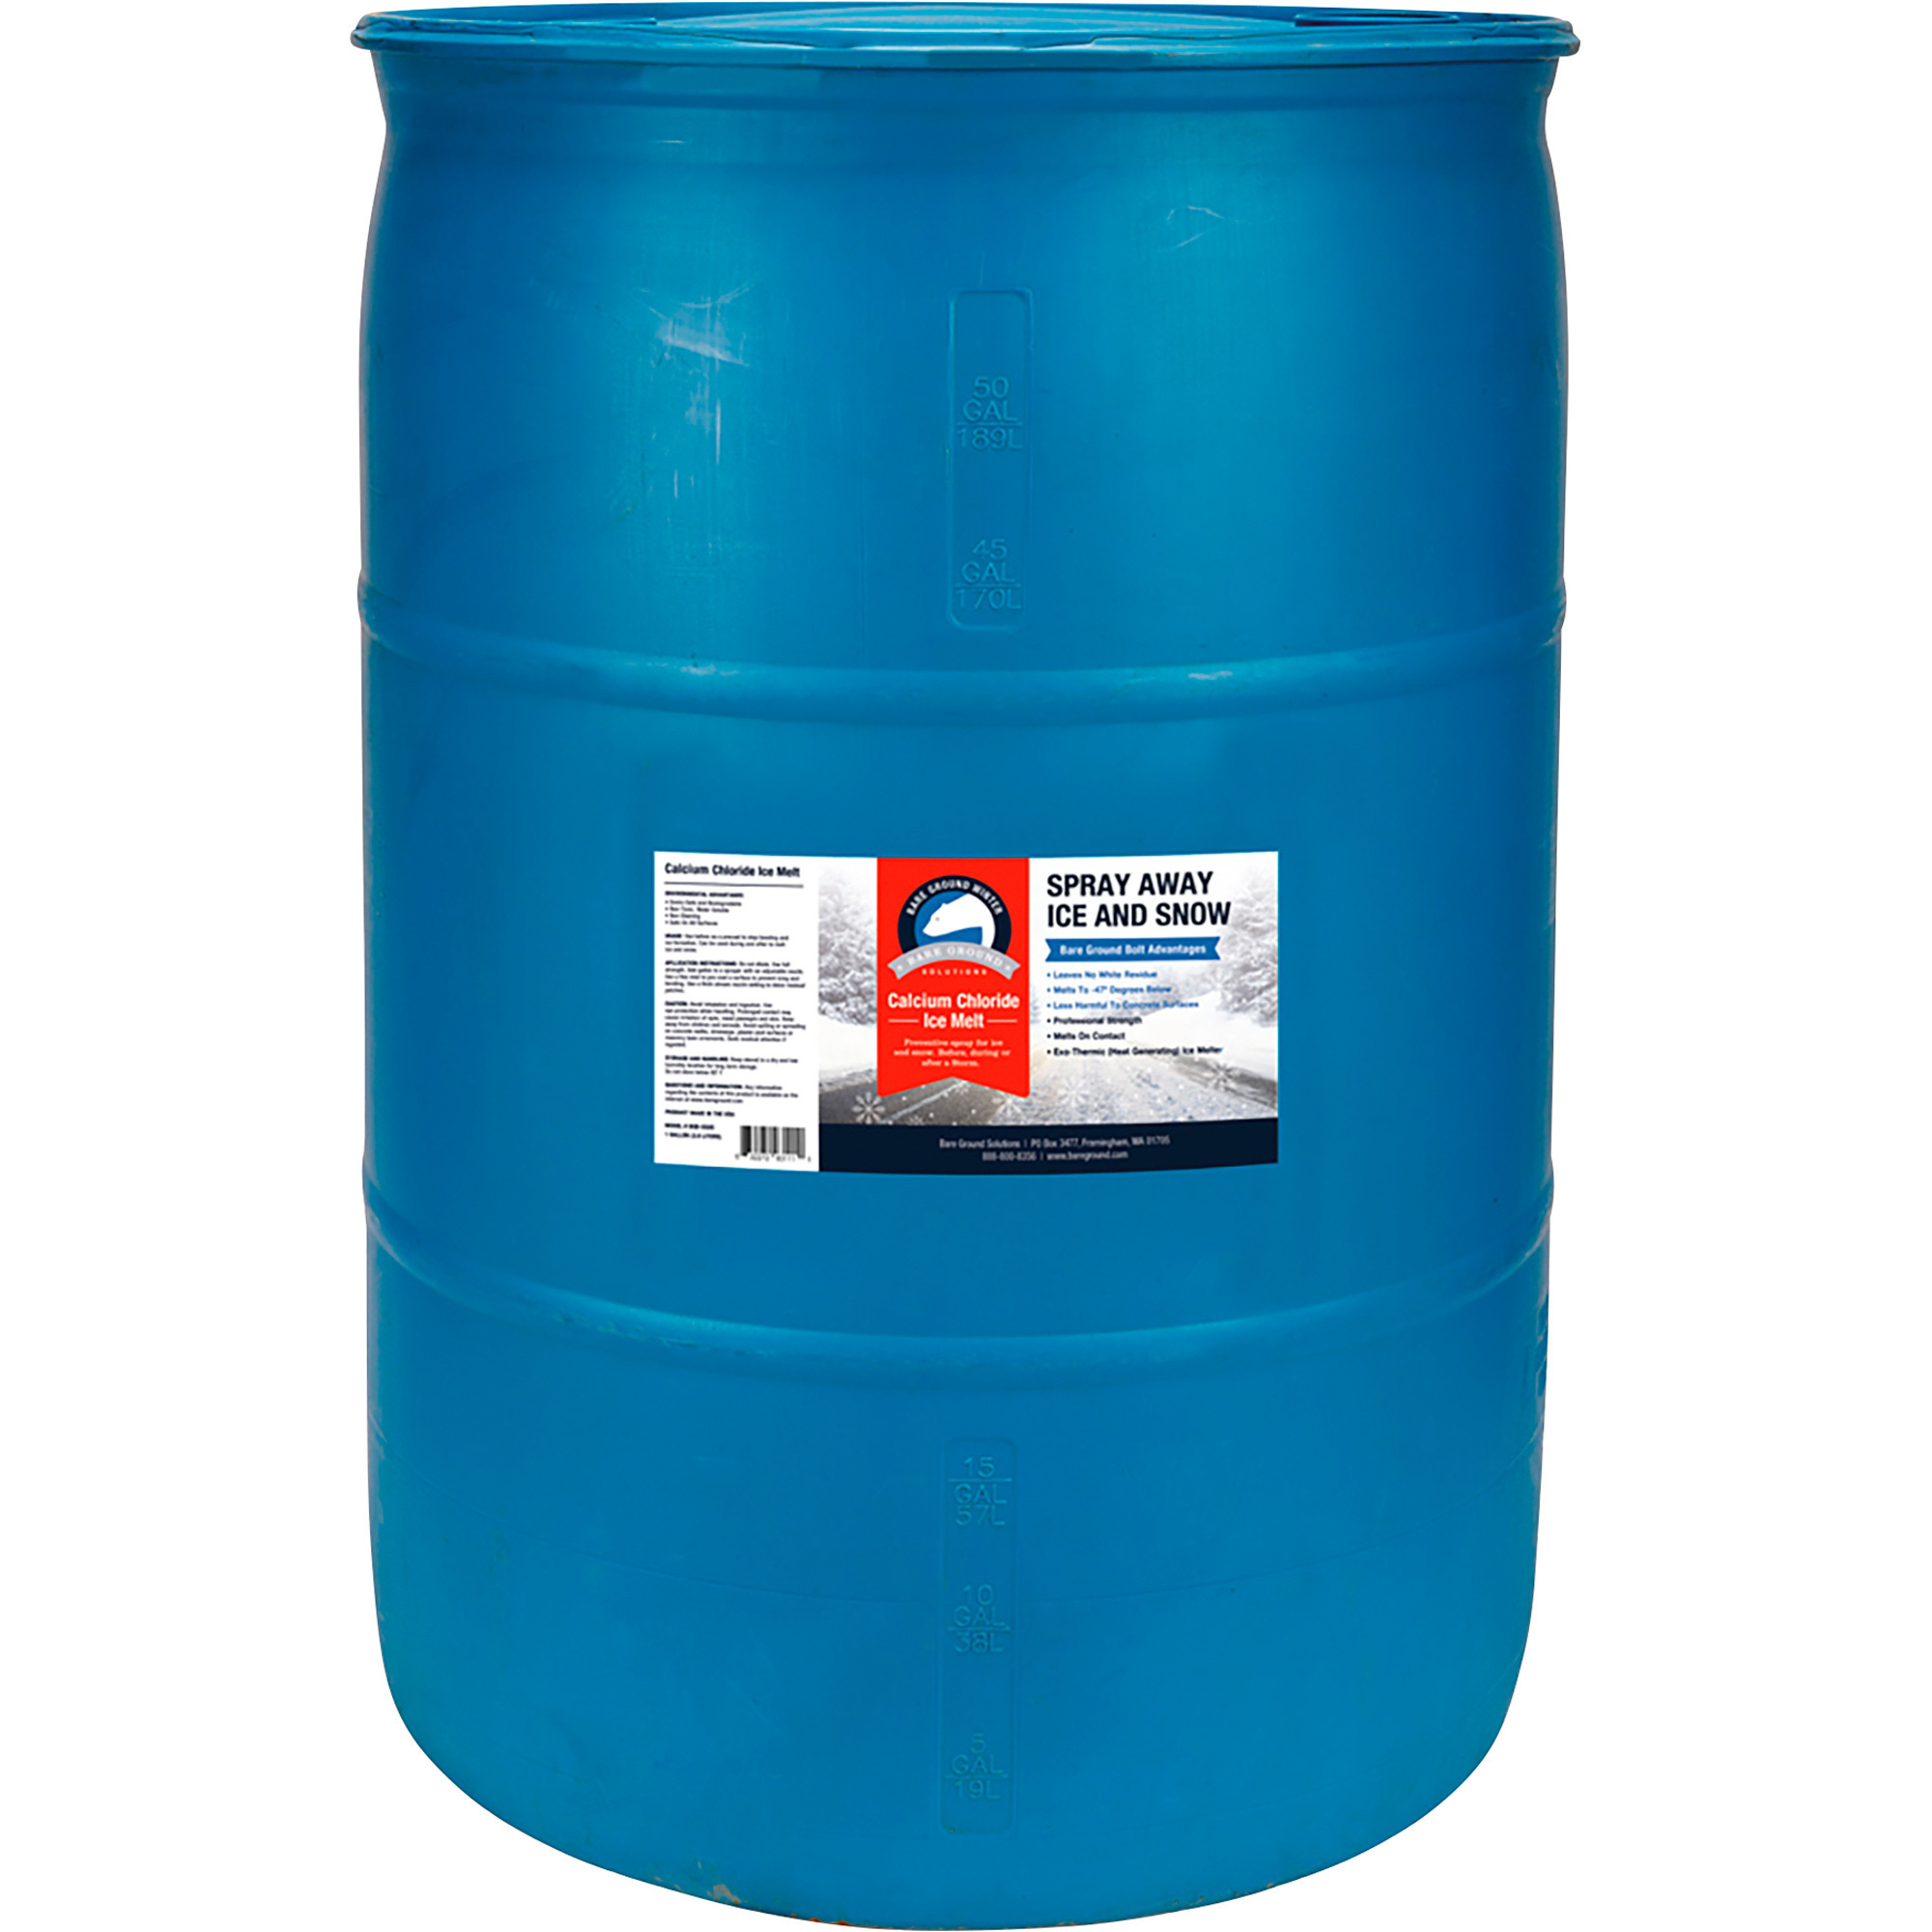 Bare Ground Solution Calcium Chloride Liquid Ice Melt, 55-Gallon Drum, Model BGB-55DC